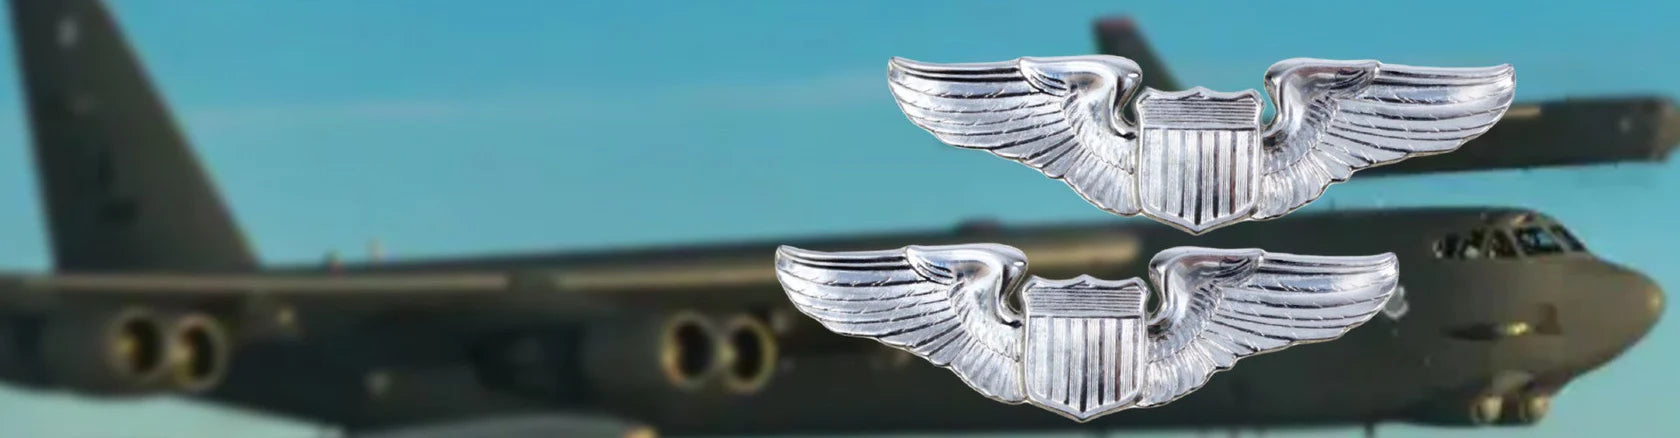 Épingle d’aile de pilote de l’USAF